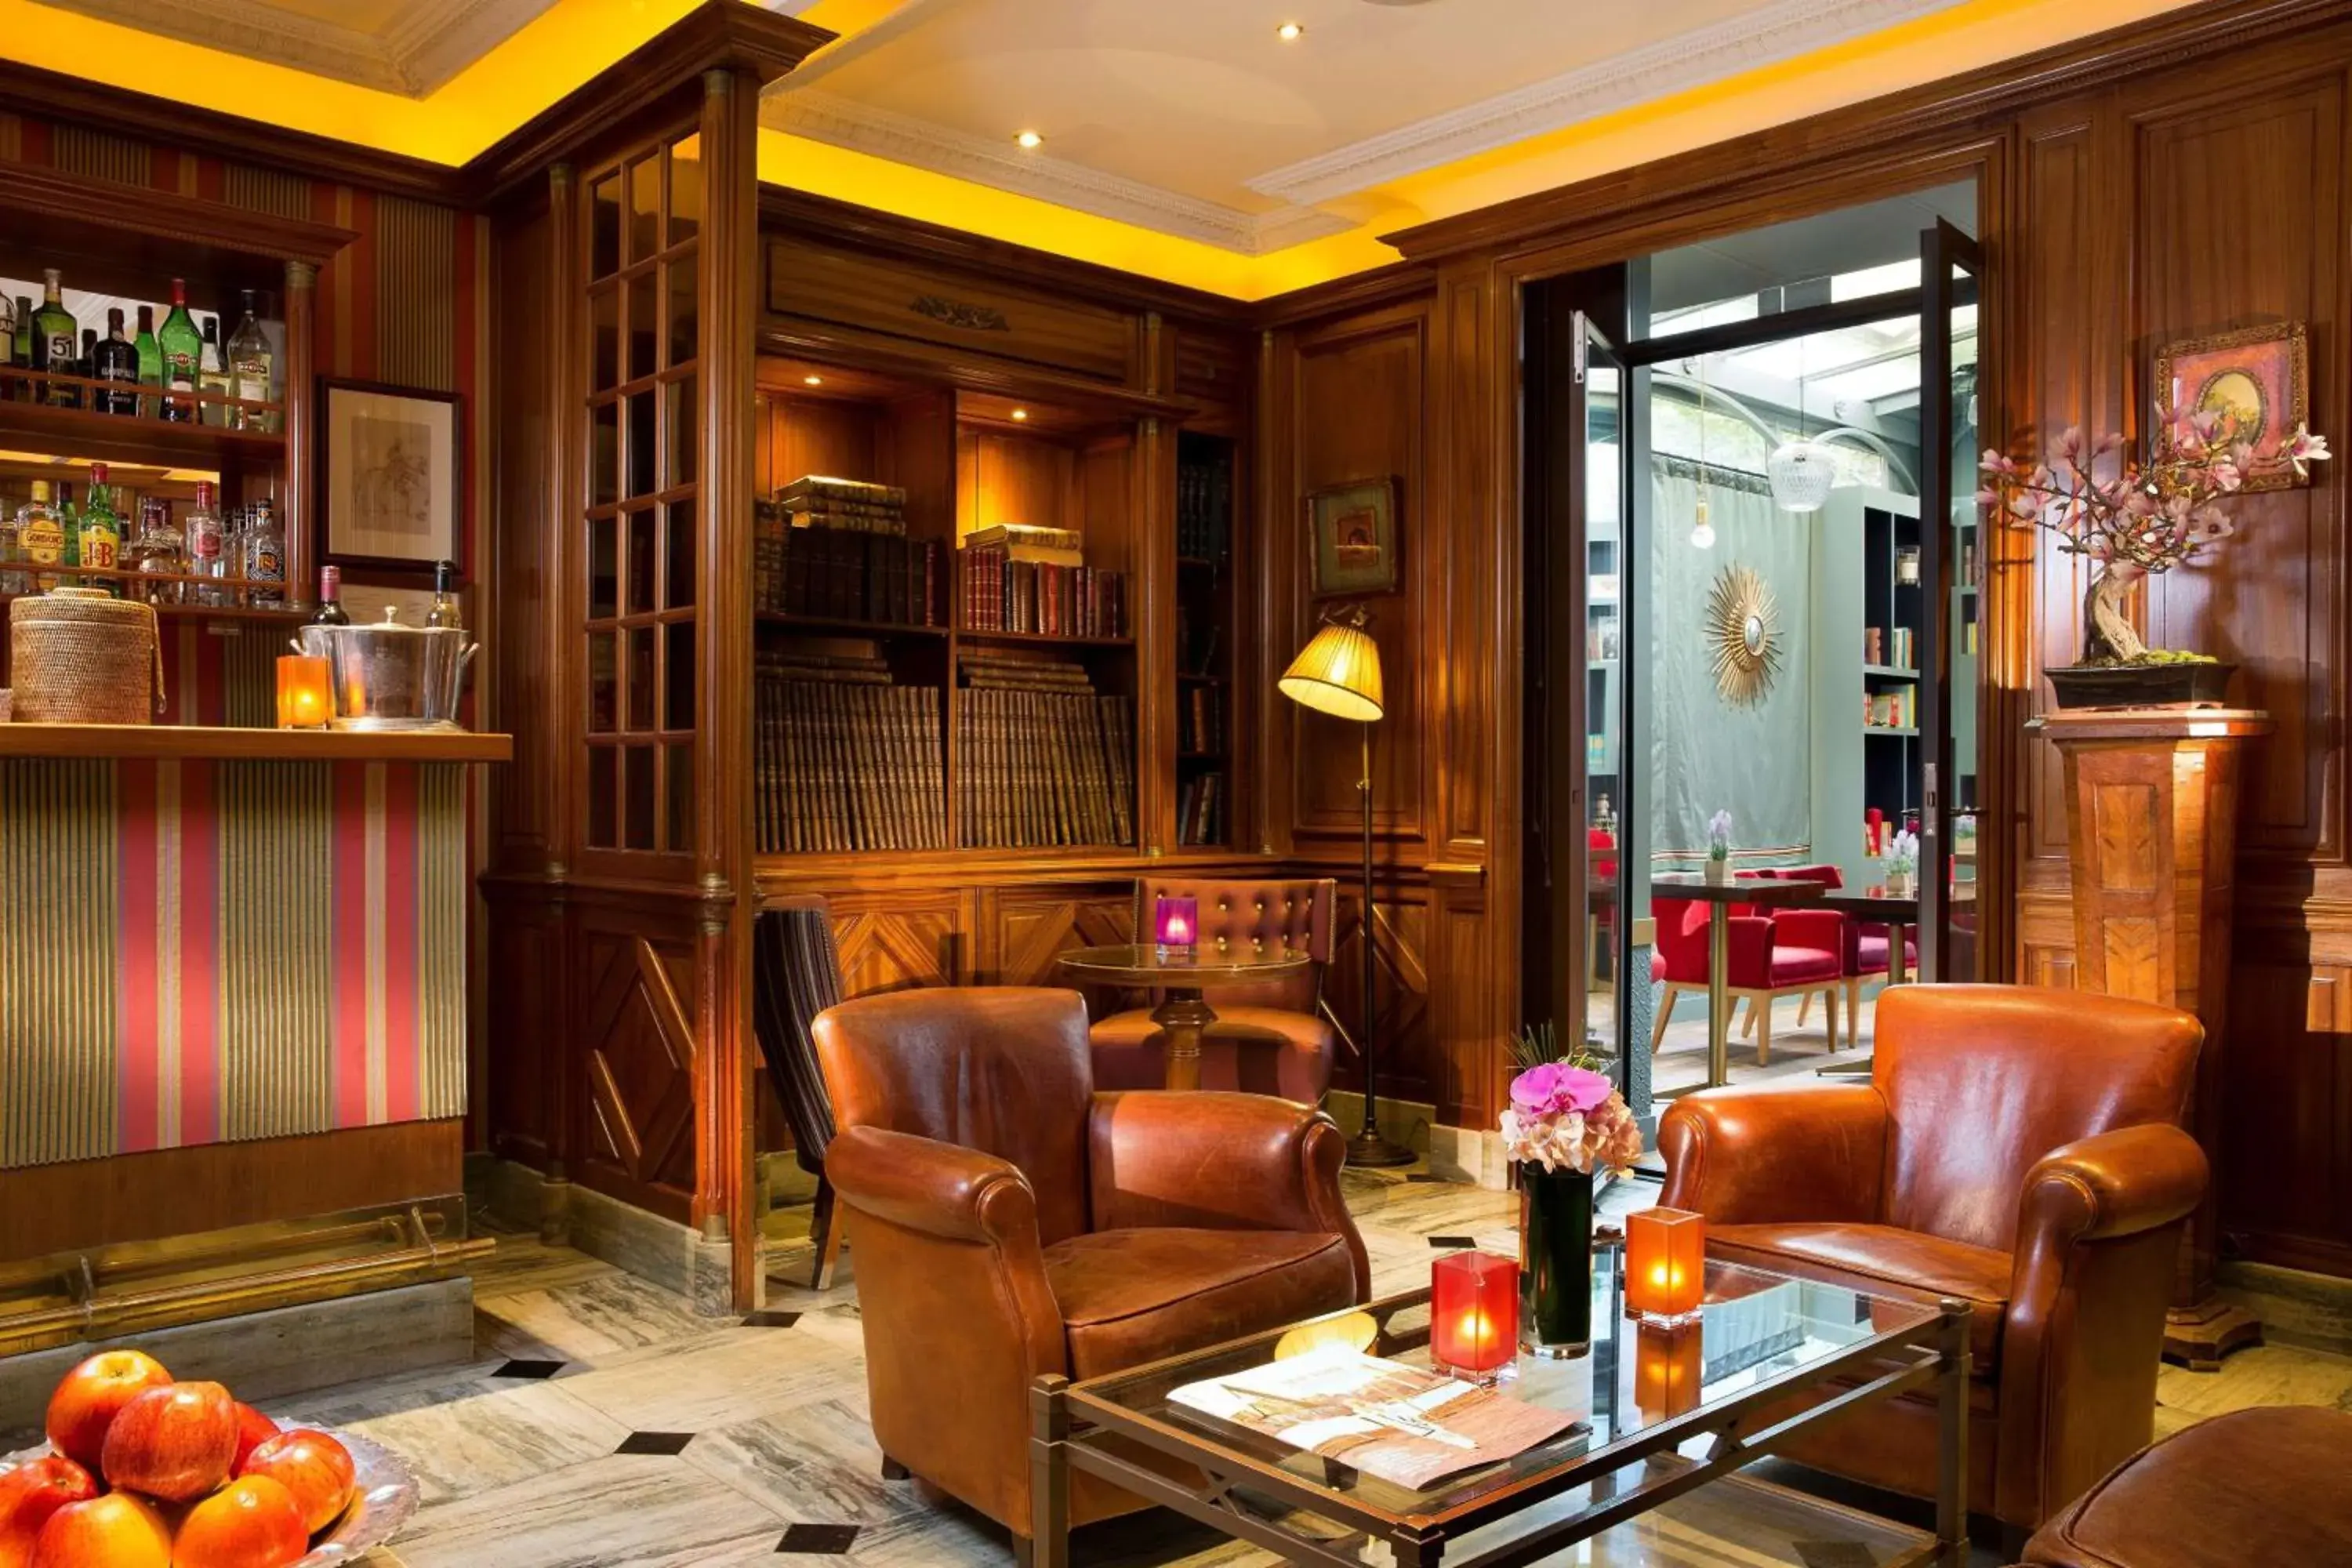 Lounge or bar, Lobby/Reception in Best Western Premier Trocadero La Tour Hotel